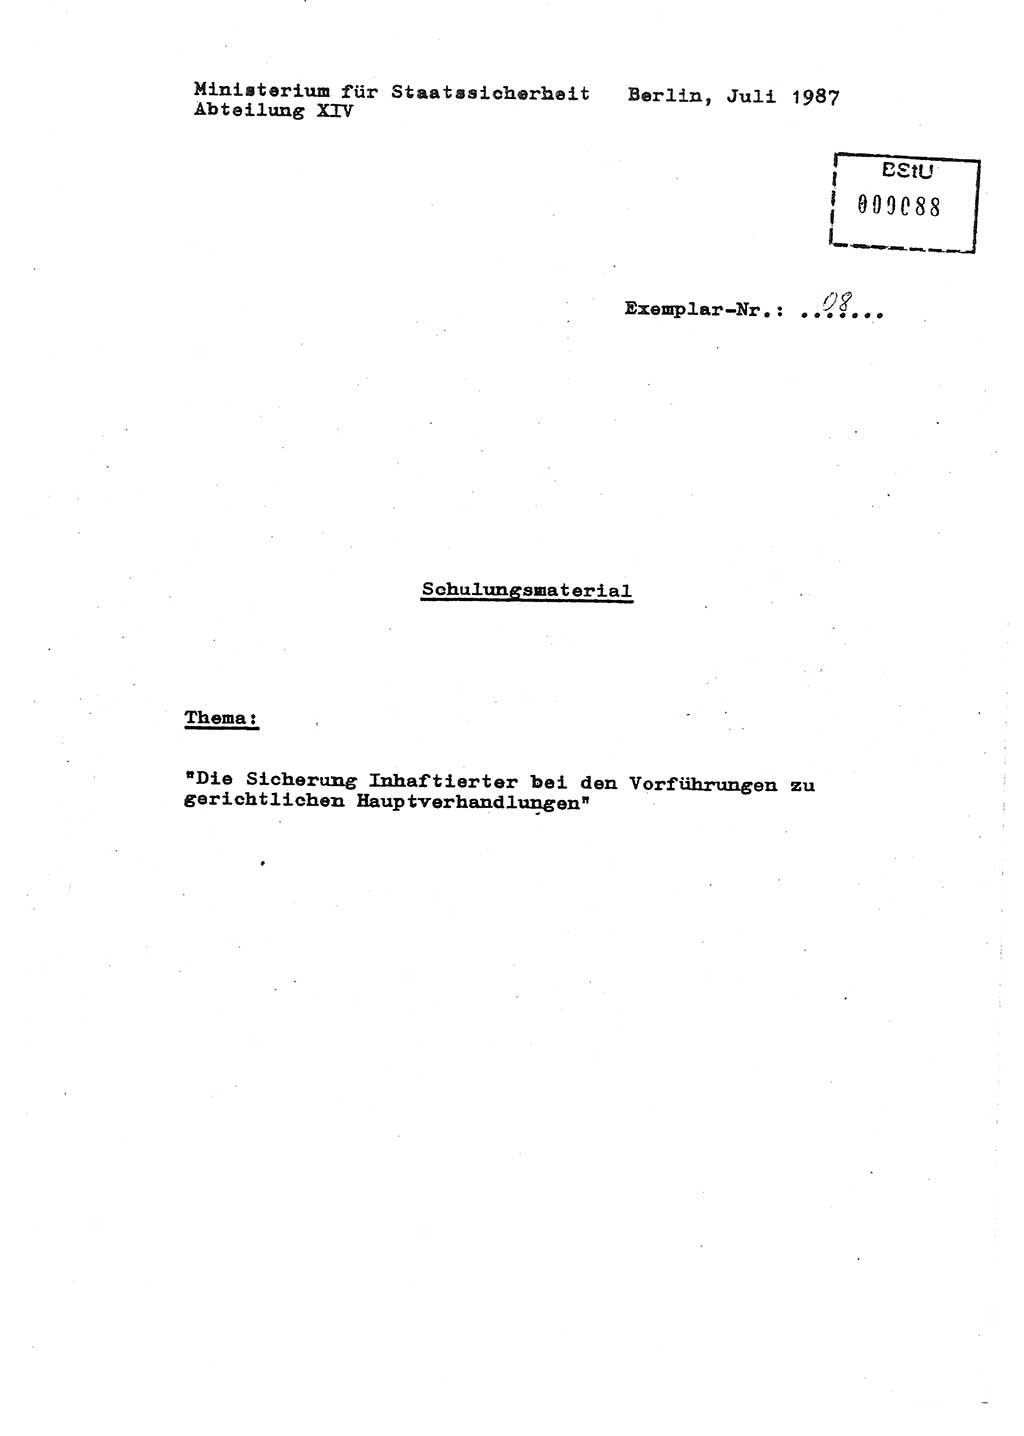 Schulungsmaterial Exemplar-Nr.: 8, Ministerium für Staatssicherheit [Deutsche Demokratische Republik (DDR)], Abteilung (Abt.) ⅩⅣ, Berlin 1987, Seite 1 (Sch.-Mat. Expl. 8 MfS DDR Abt. ⅩⅣ /87 1987, S. 1)